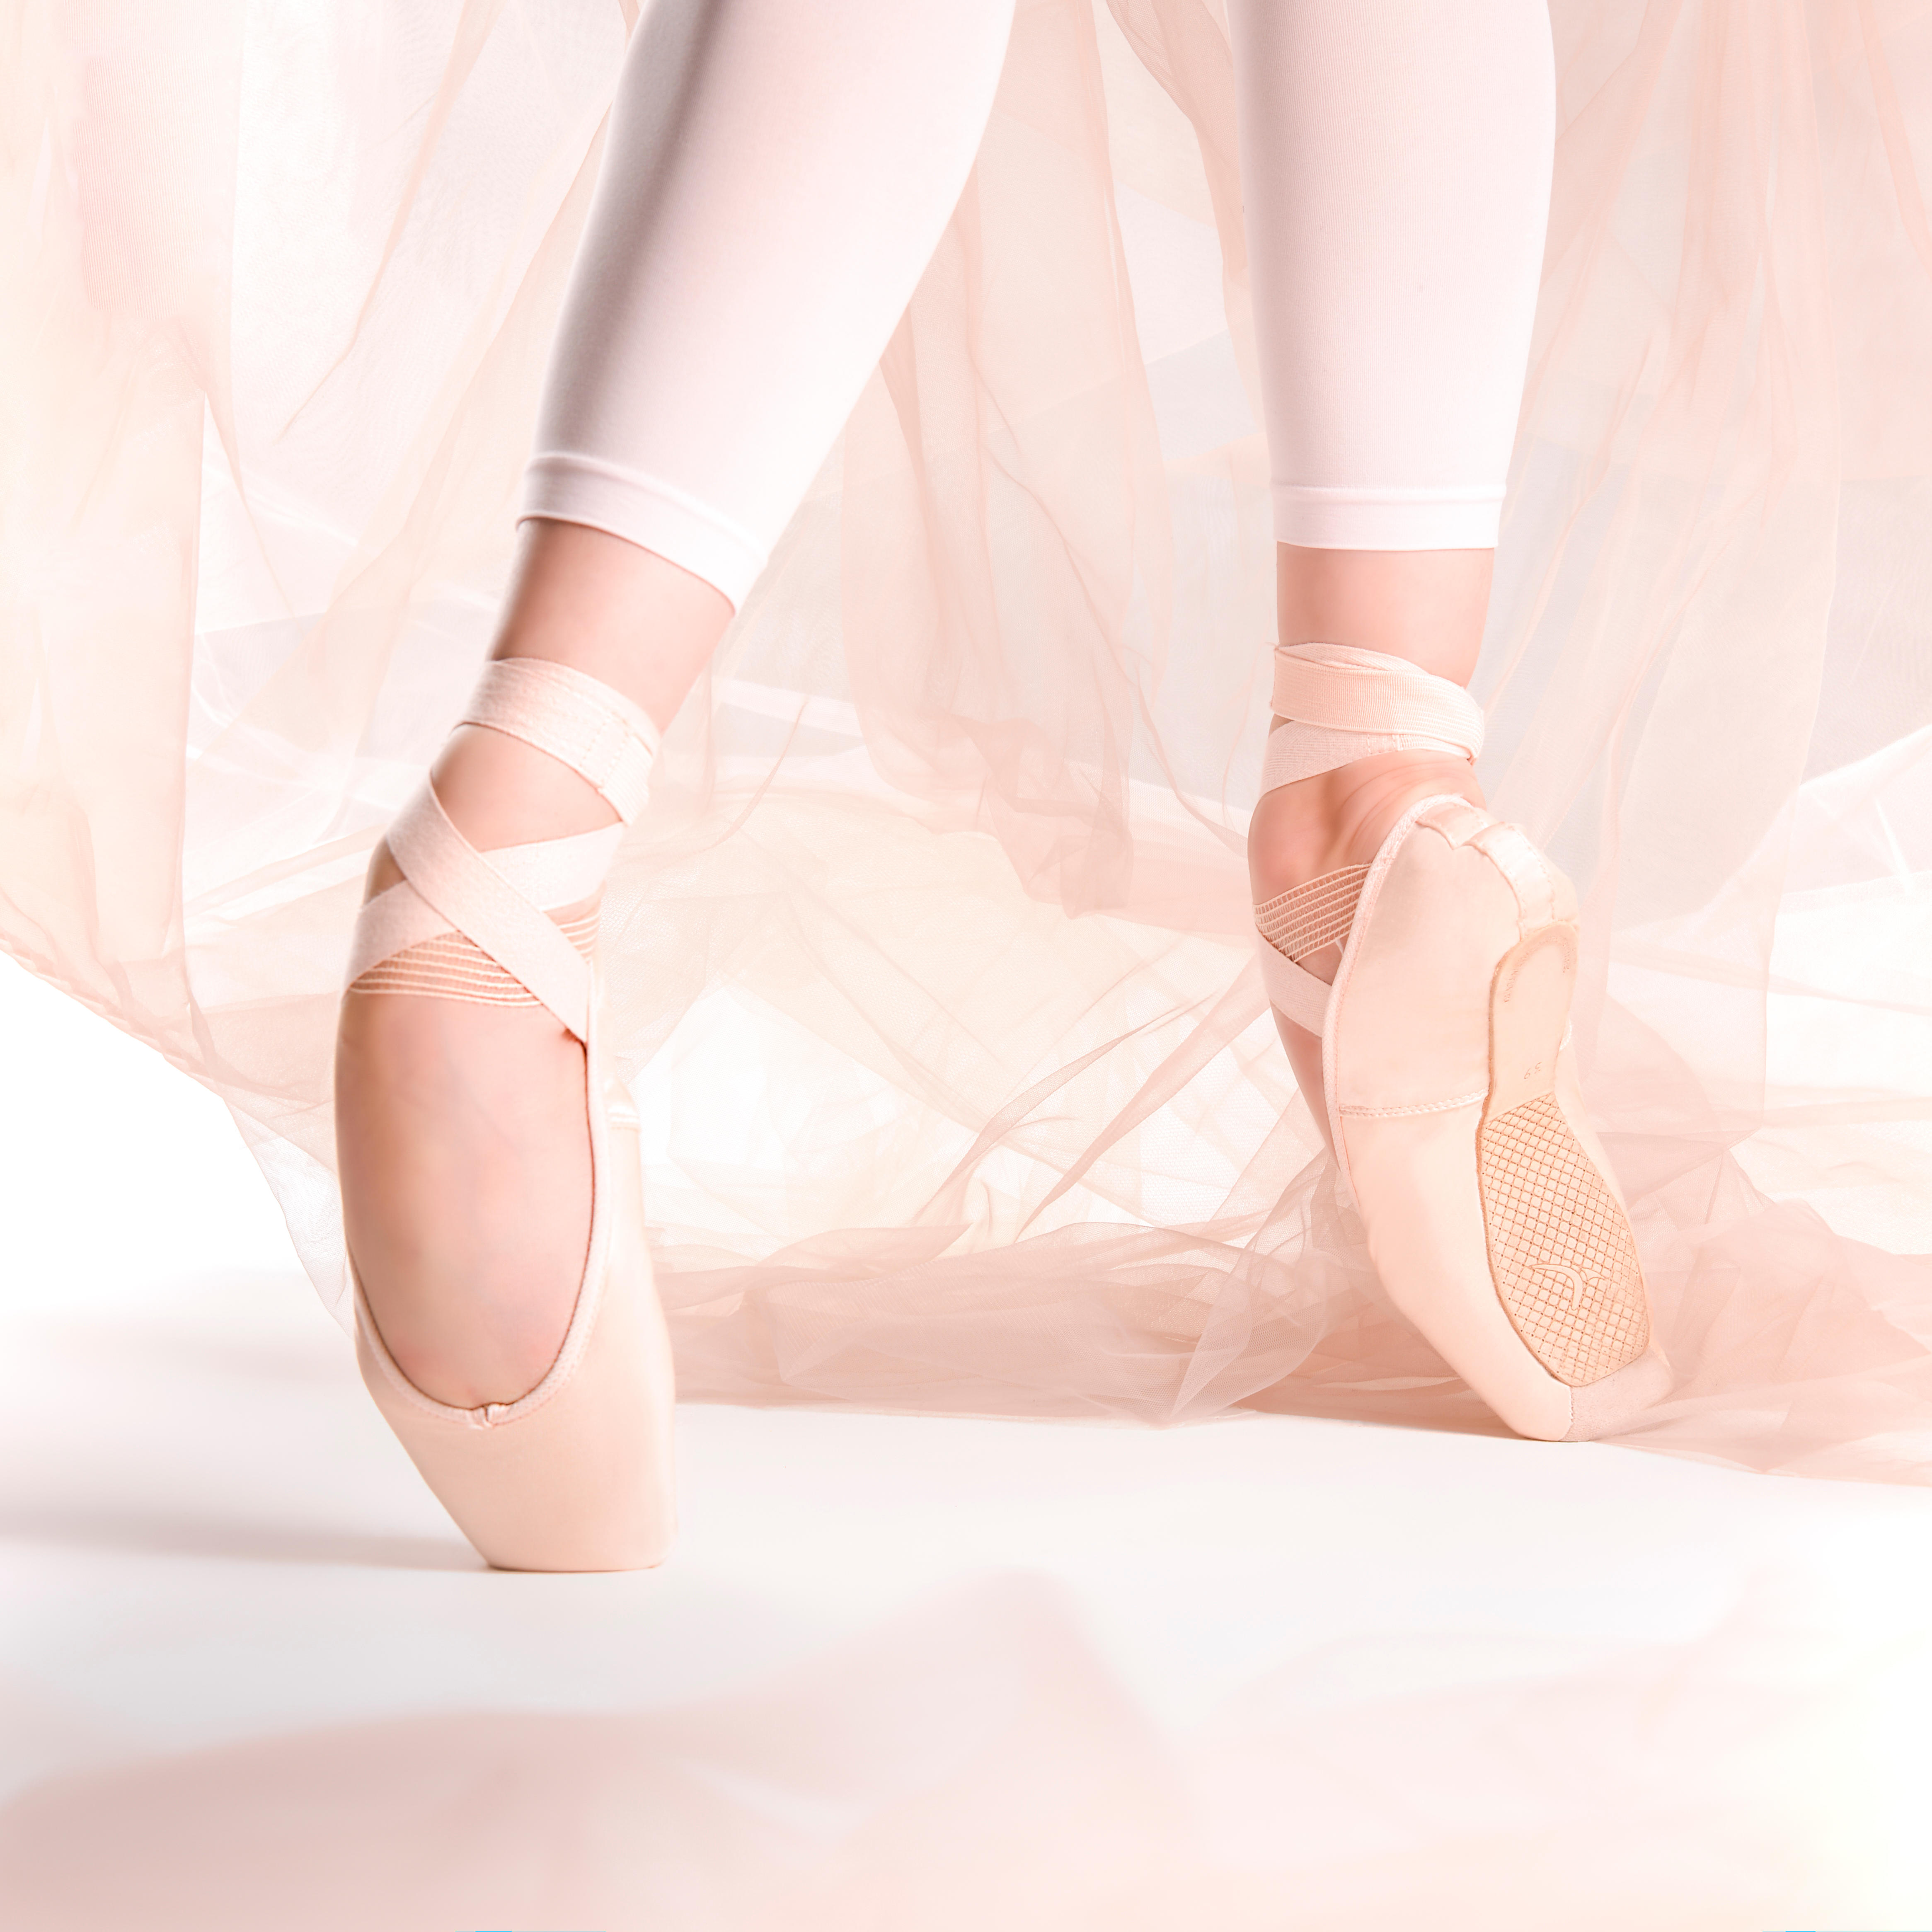 Bezioner Ballettschuhe Ballettschläppchen Tanzschuhe Geteilte Ledersohle für Kinder und Erwachsene